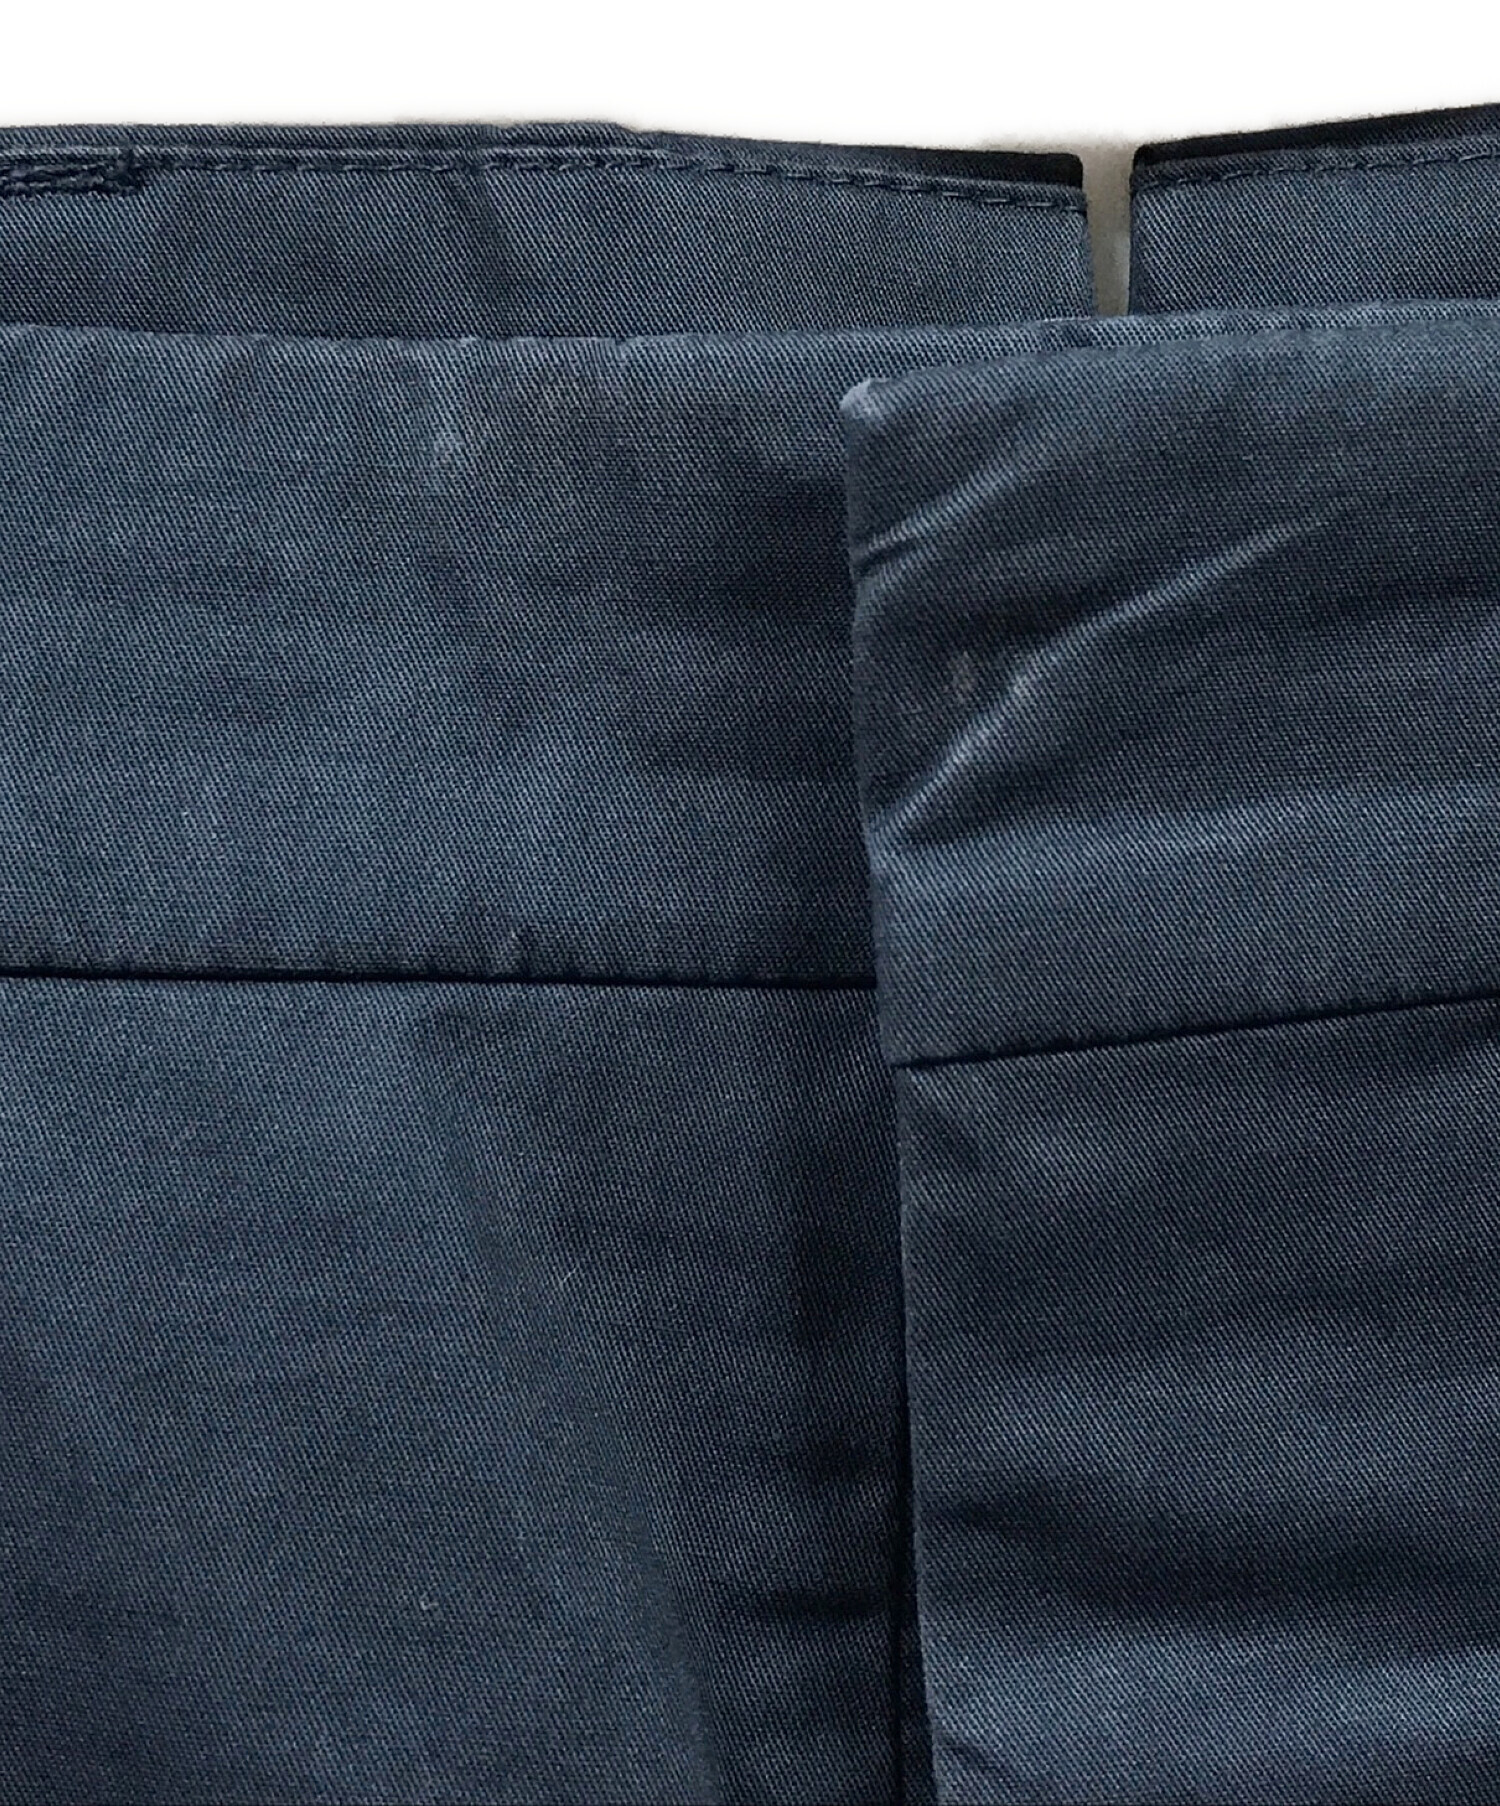 PRADA (プラダ) 裾ジップピンストライプスラックスパンツ ネイビー サイズ:48